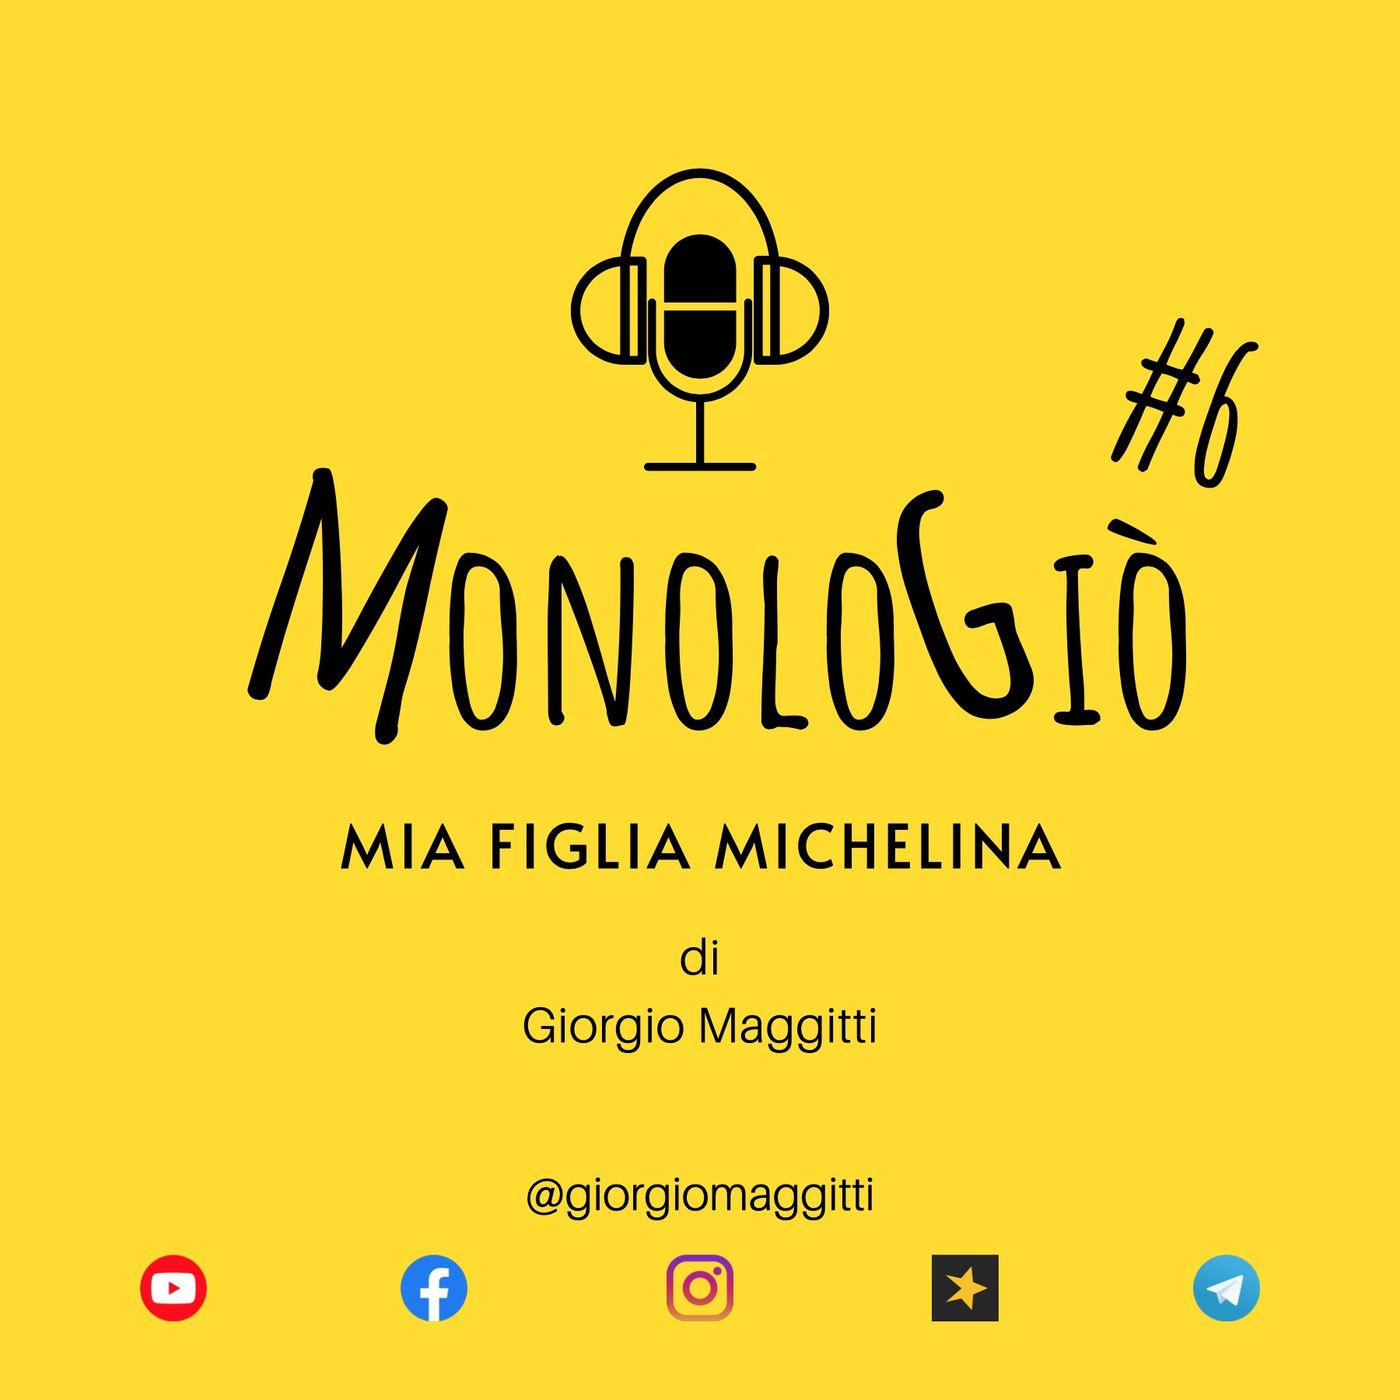 Mia figlia Michelina | MonoloGiò #6